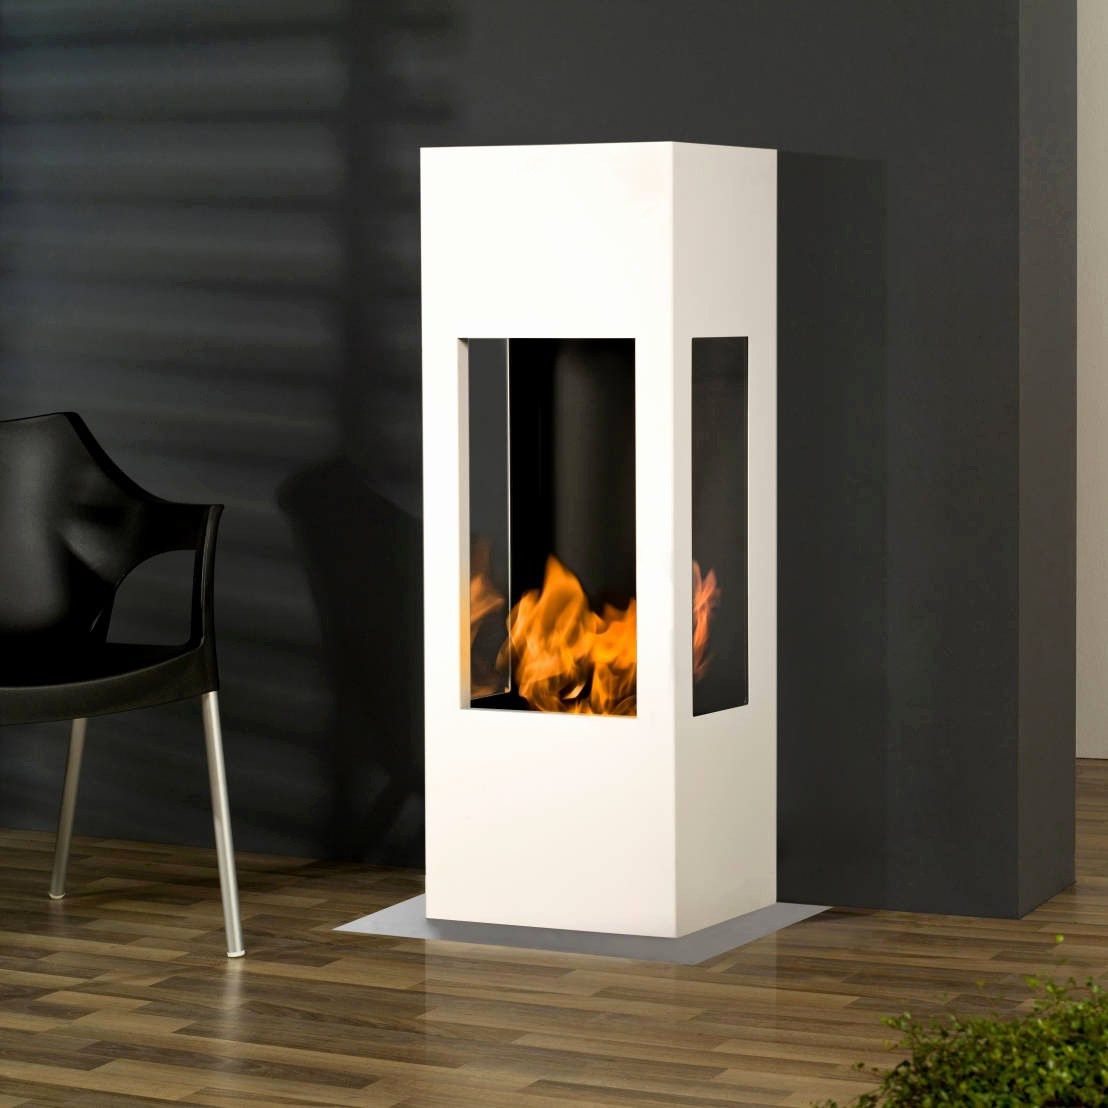 How to Make Fireplace More Efficient Lovely Ideen 44 Für Tischkamin Selber Bauen